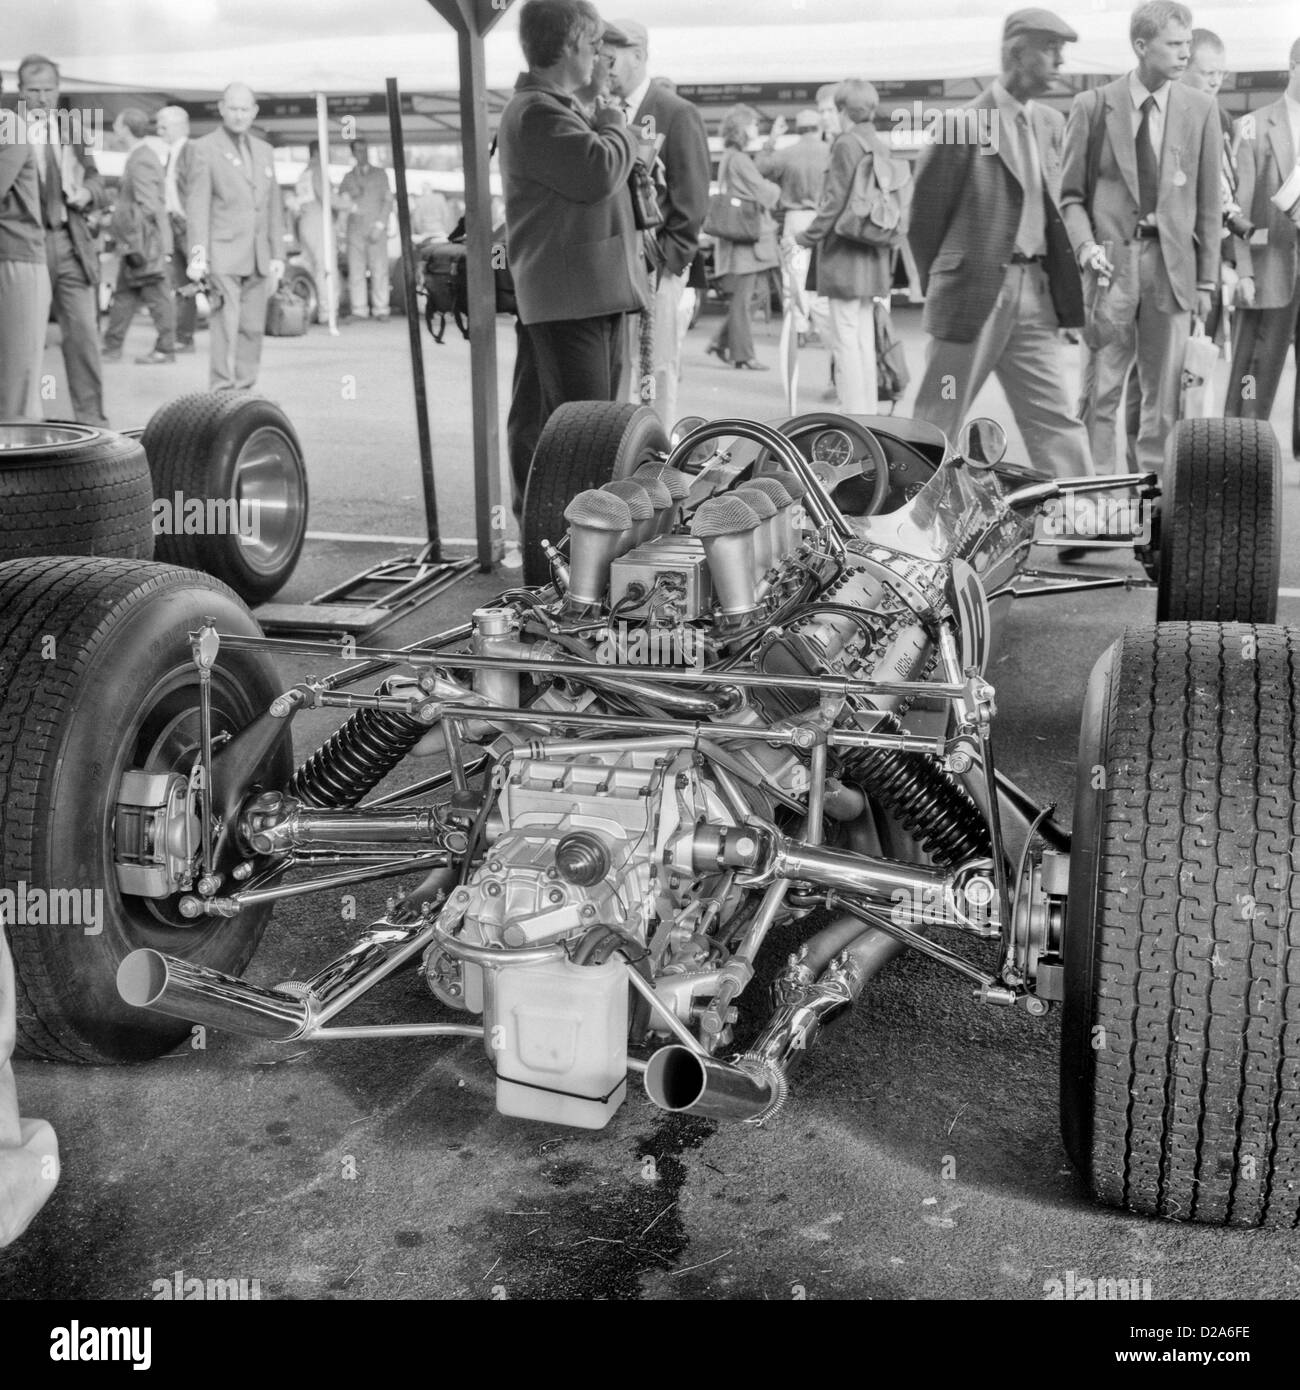 1967 Lotus 49 dans le paddock à Goodwood motor racing circuit, West Sussex. UK Septembre 1999 Banque D'Images